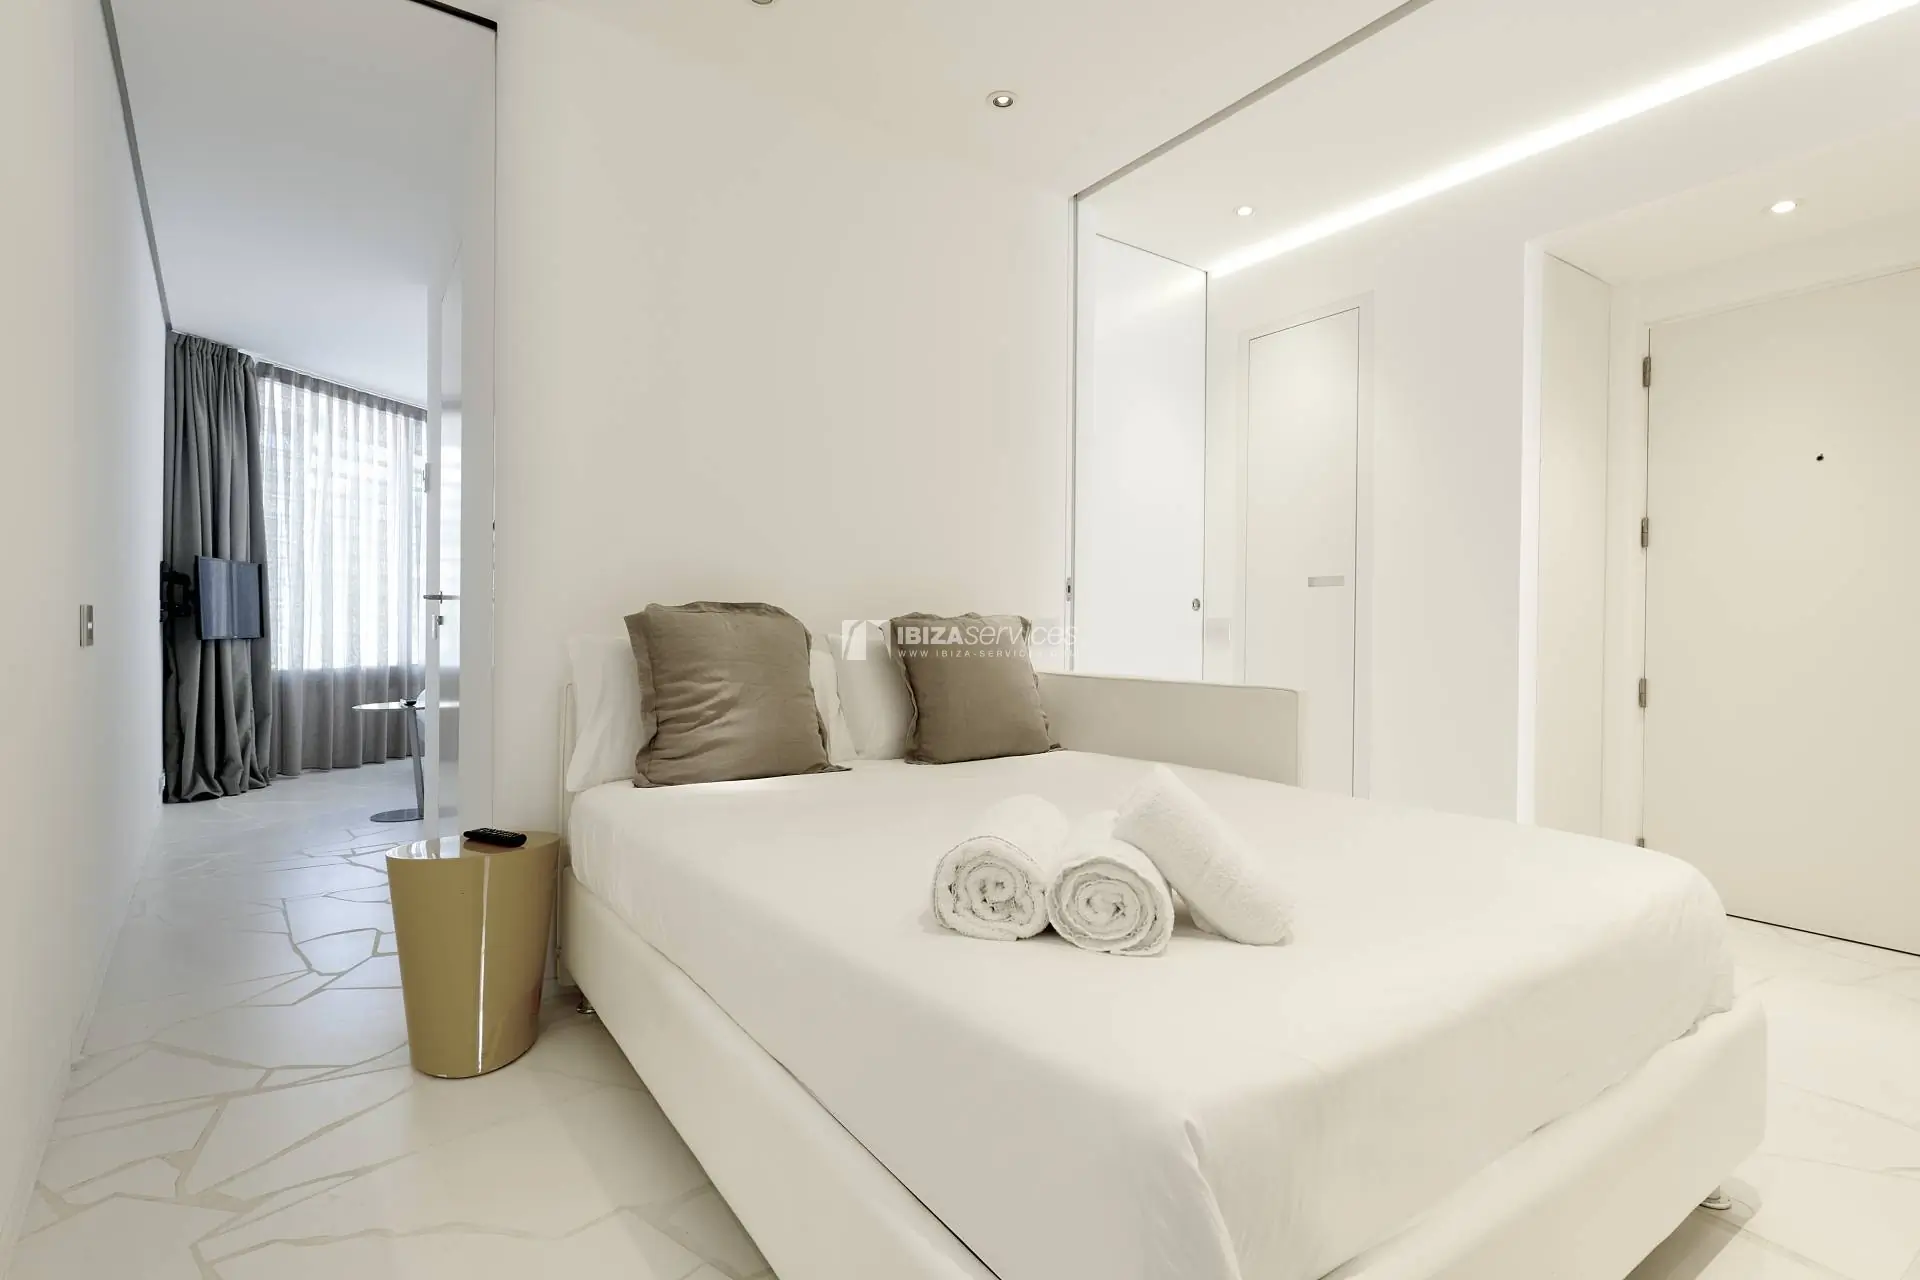 4041 Luxe 2-slaapkamer appartement te huur in Las Boas de Ibiza